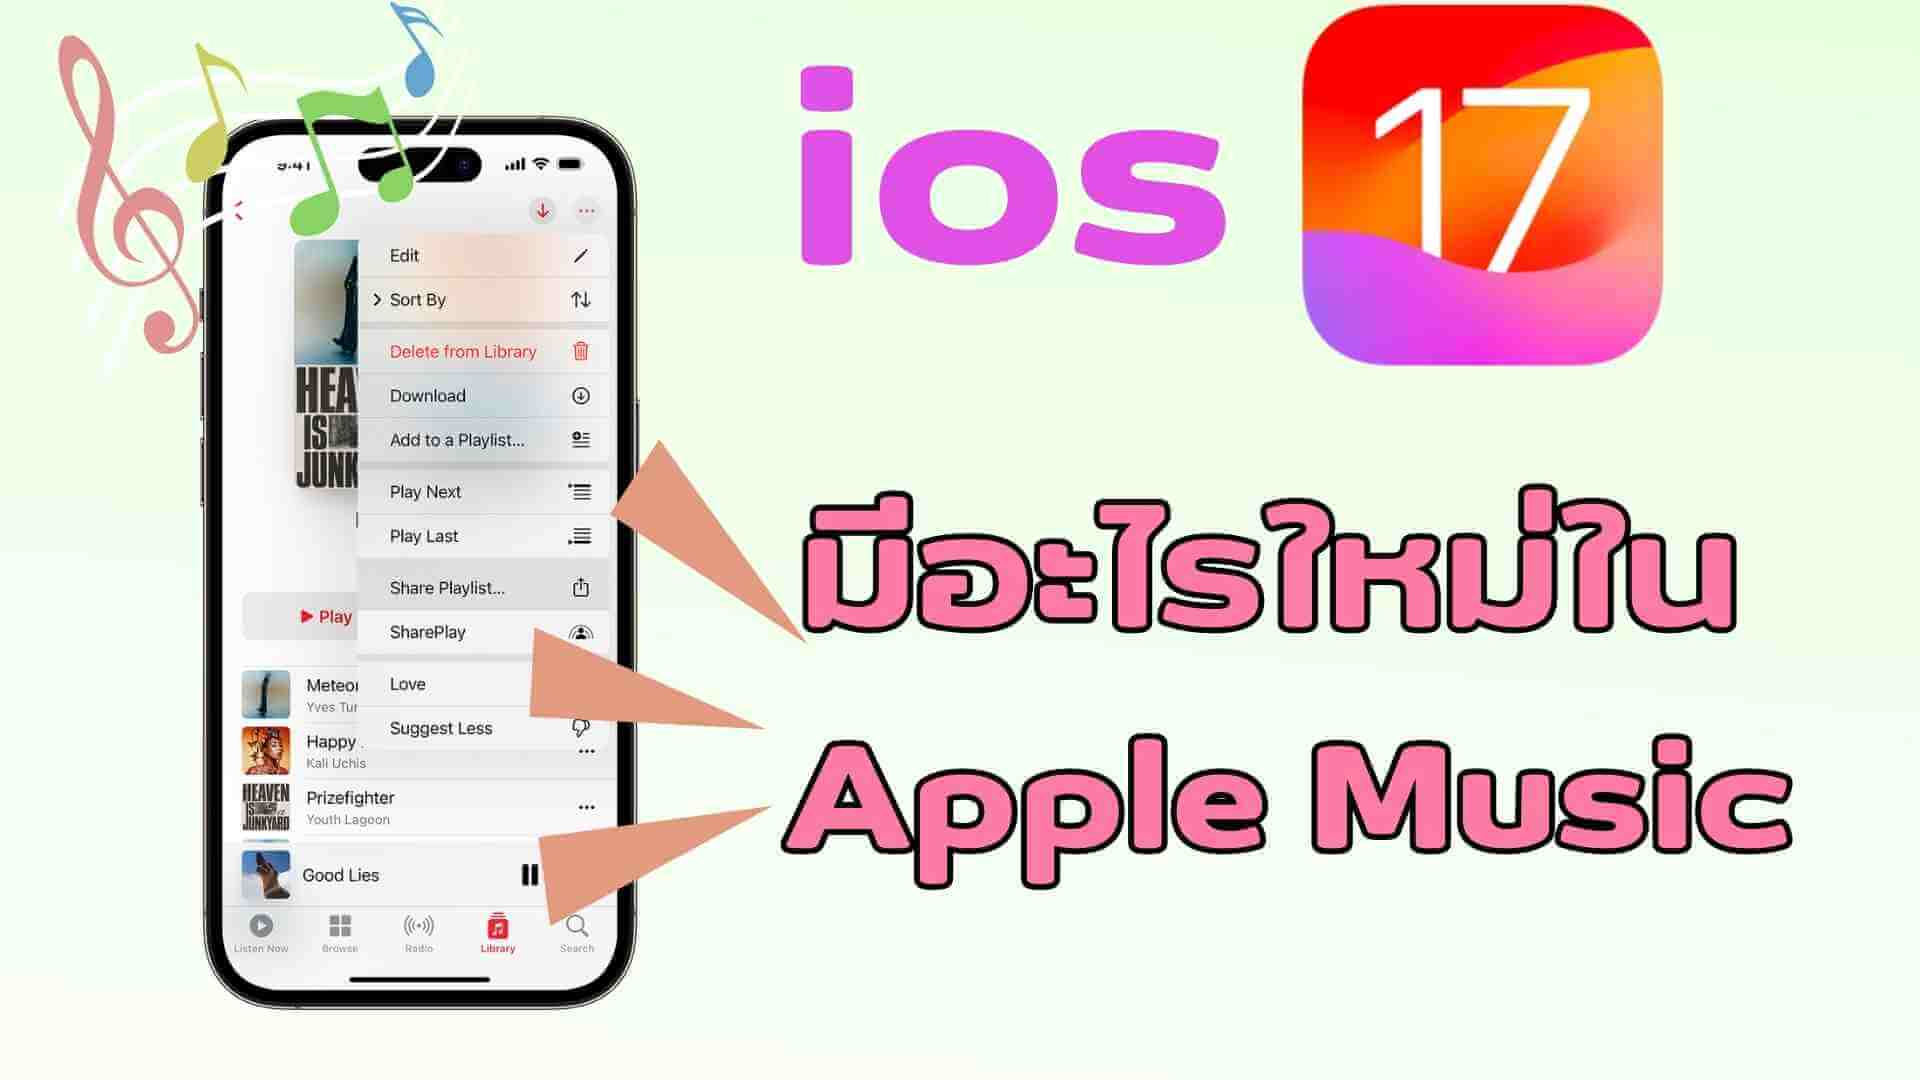 Ios 17】 มีอะไรใหม่ใน Apple Music? 7 ฟีเจอร์ใหม่ใน Apple Music ใหม่โดยสรุป